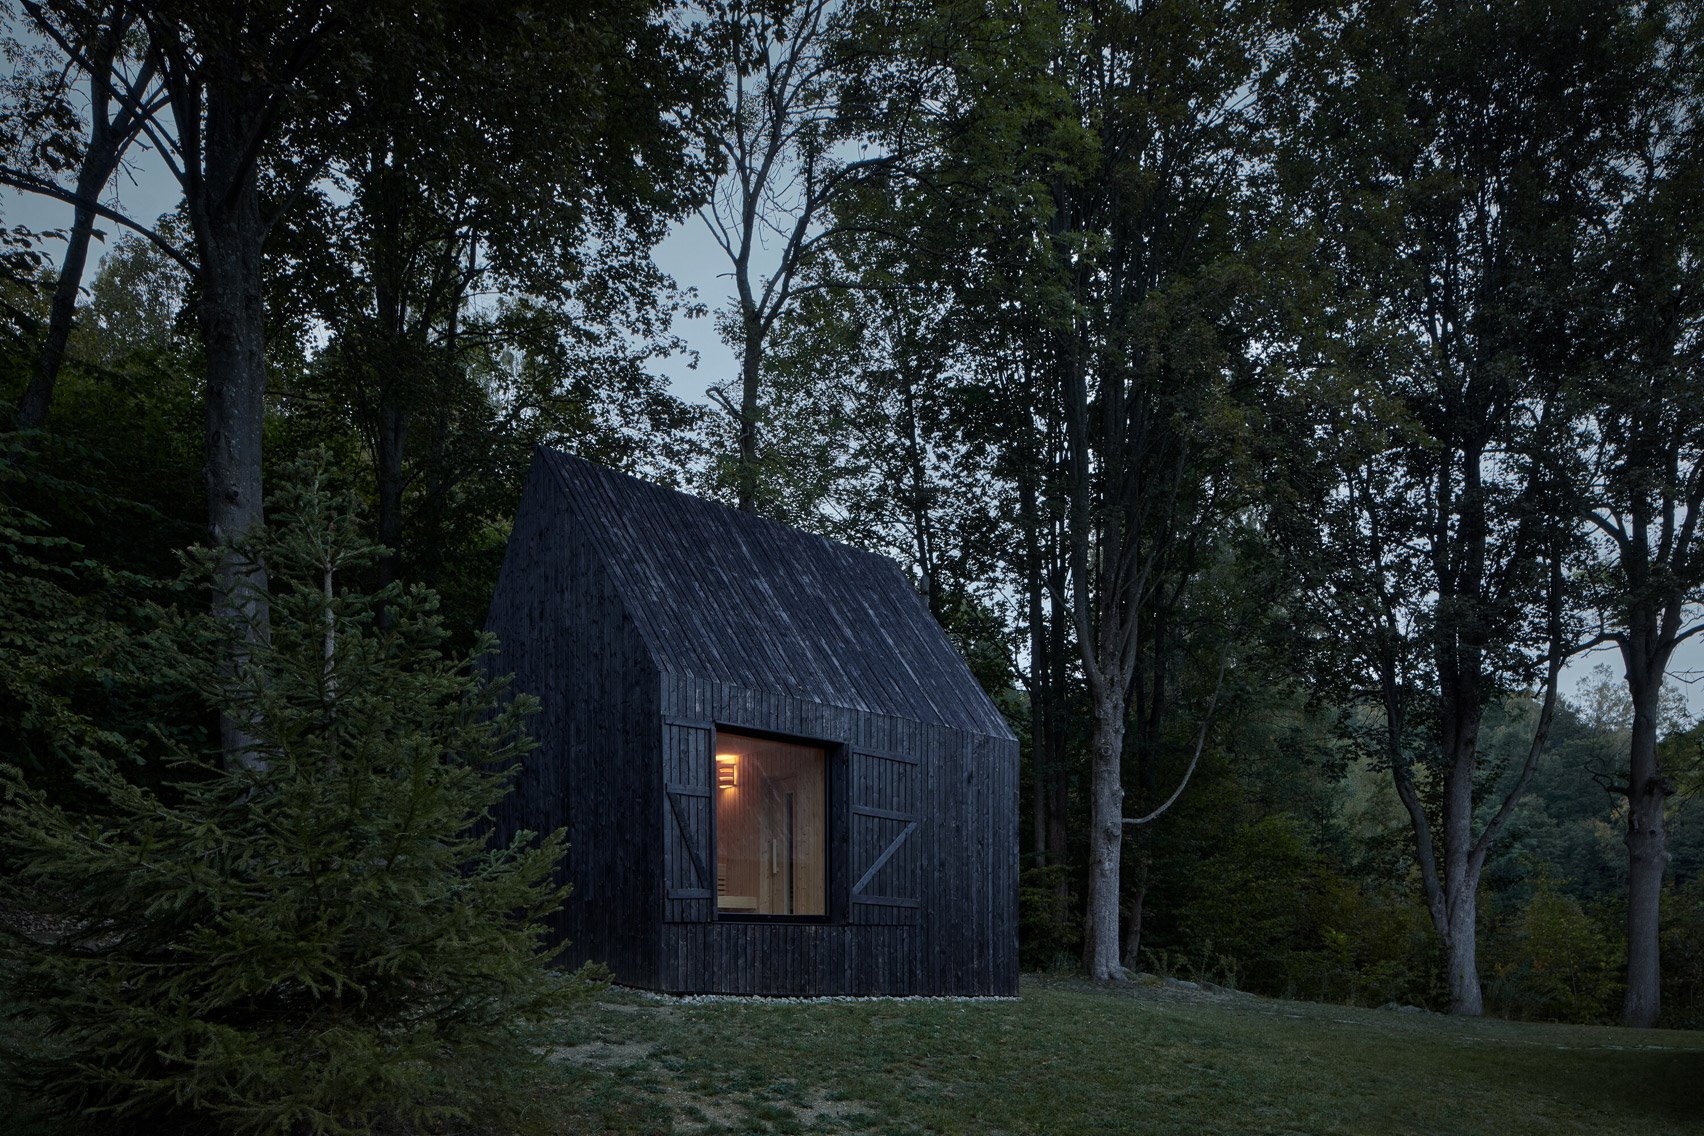 Casita de madera negra en el bosque de noche